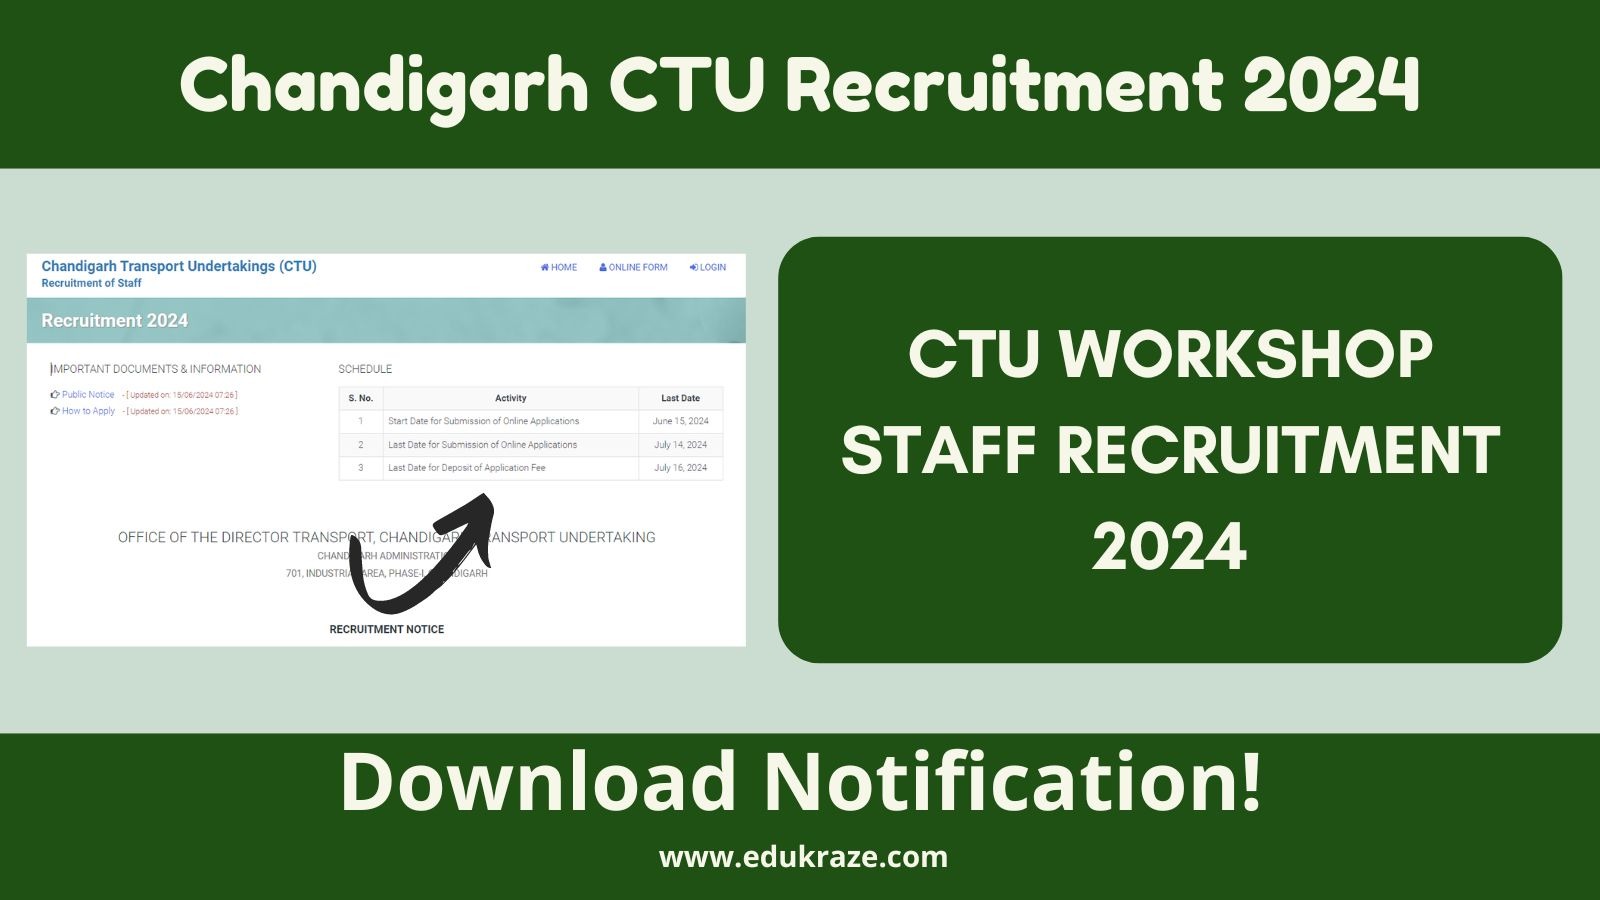 Chandigarh CTU Workshop Staff Recruitment 2024, Check Notification & Apply!